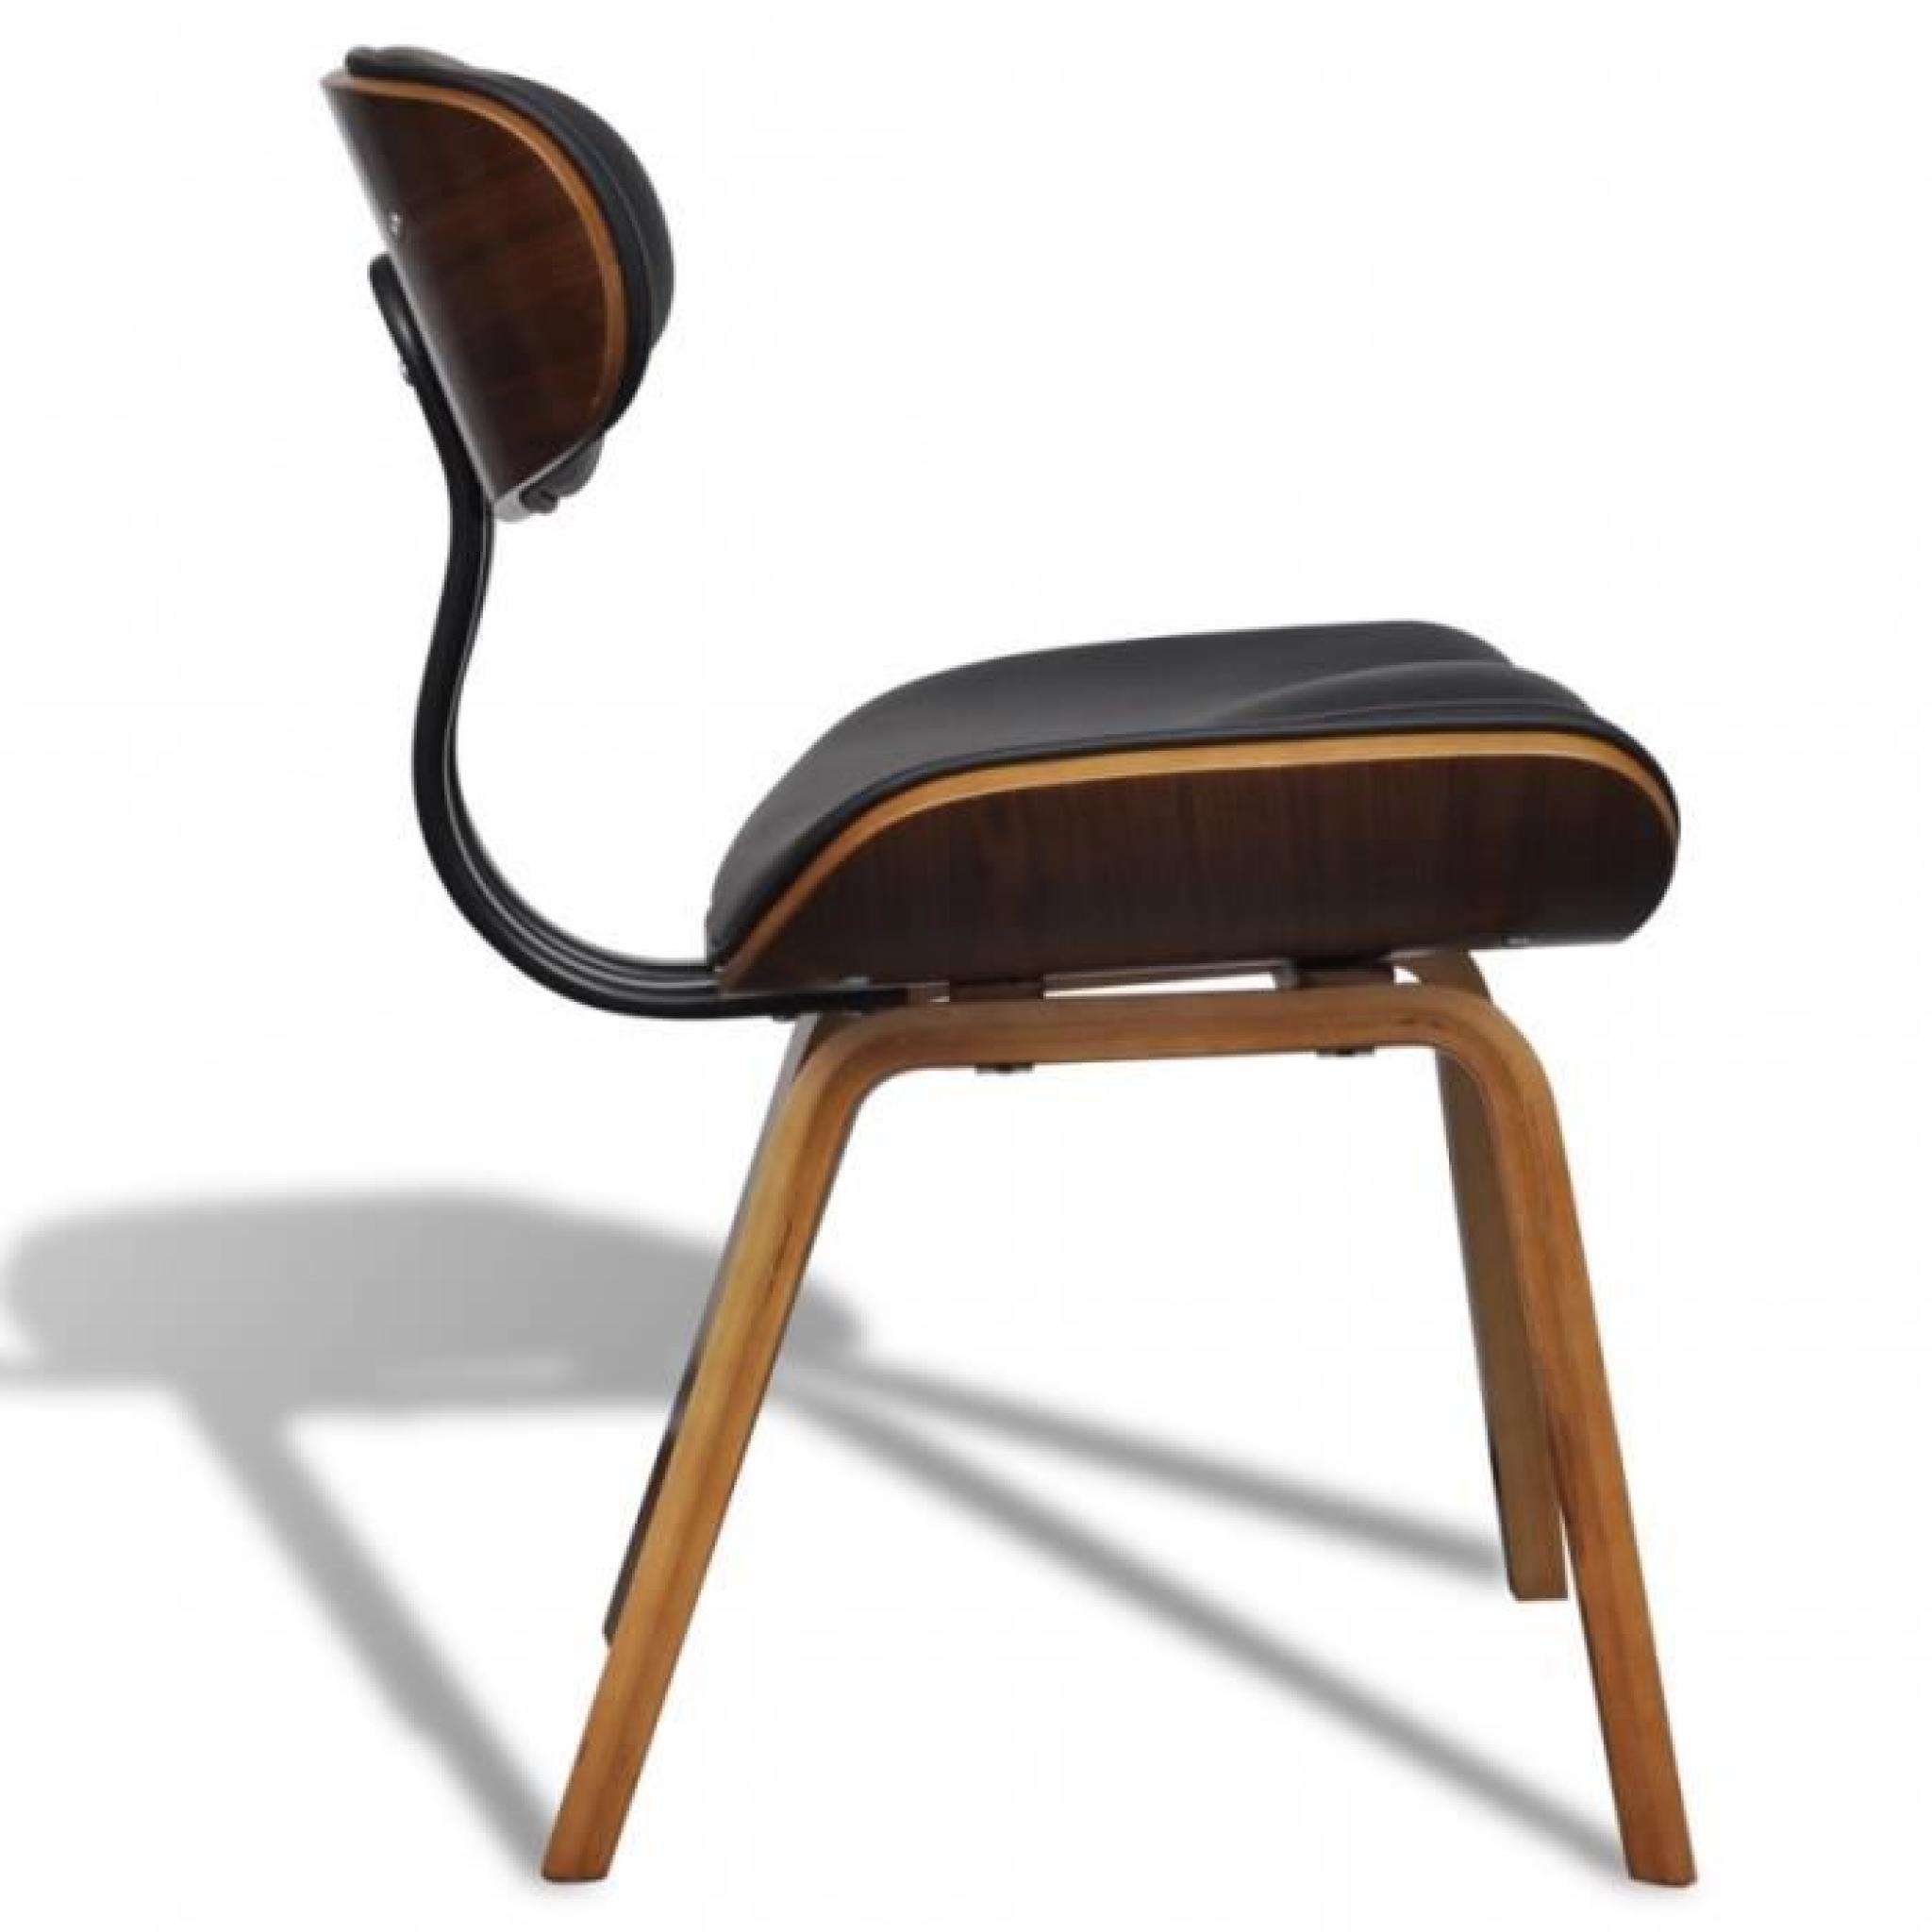 Ce set de 2 chaises de salle à manger est un point de convergence de regards. Avec son design simple et ergonomique, cette chaise... pas cher